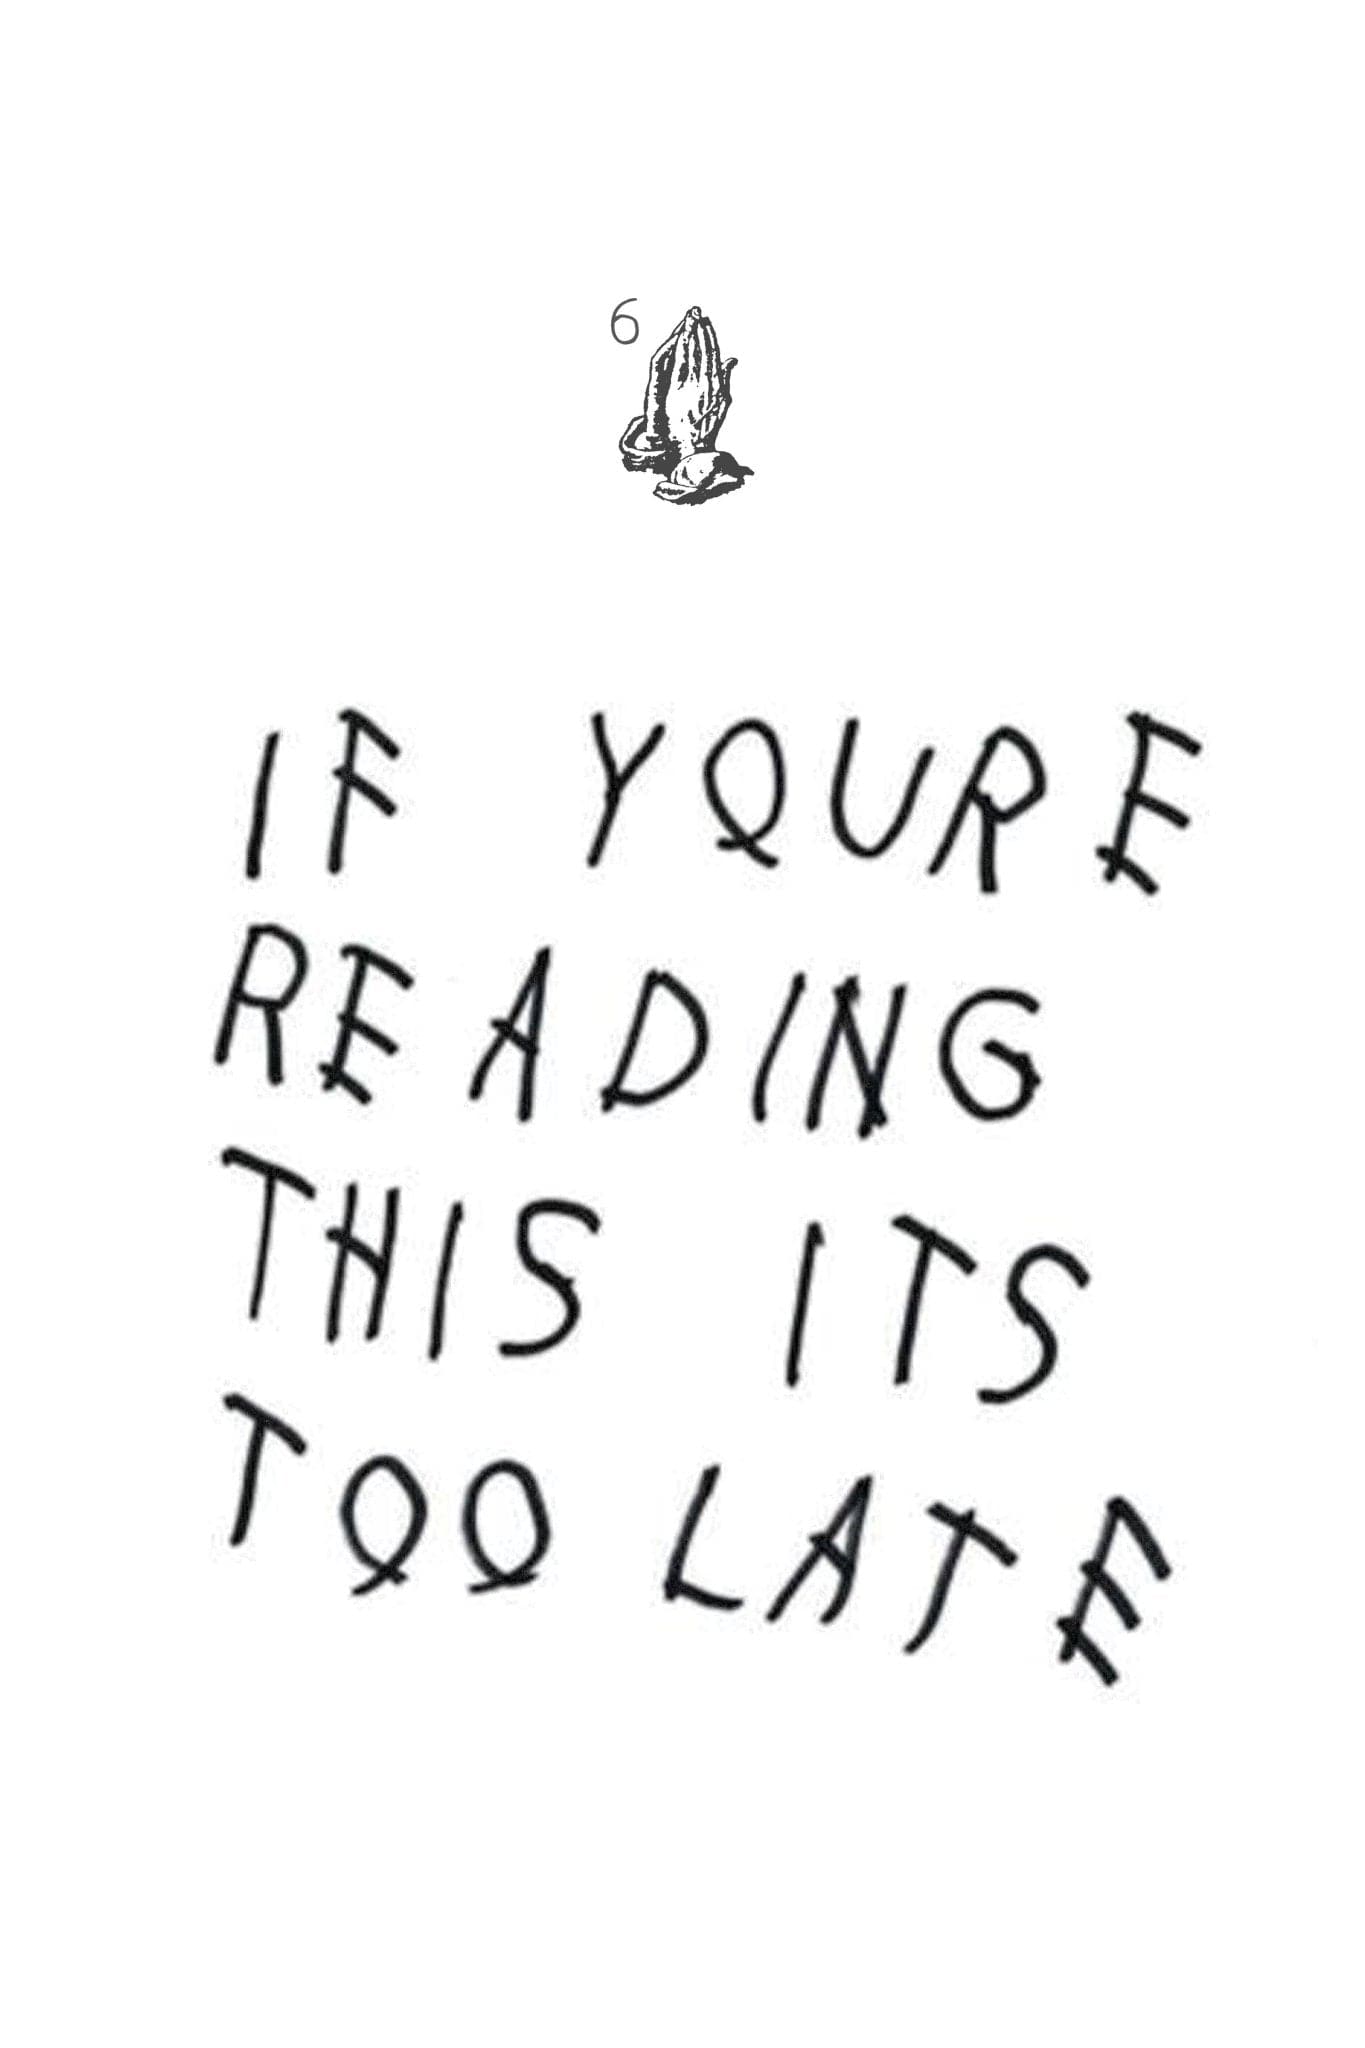 Drake Take Care Album Quote Poster 24 X 36